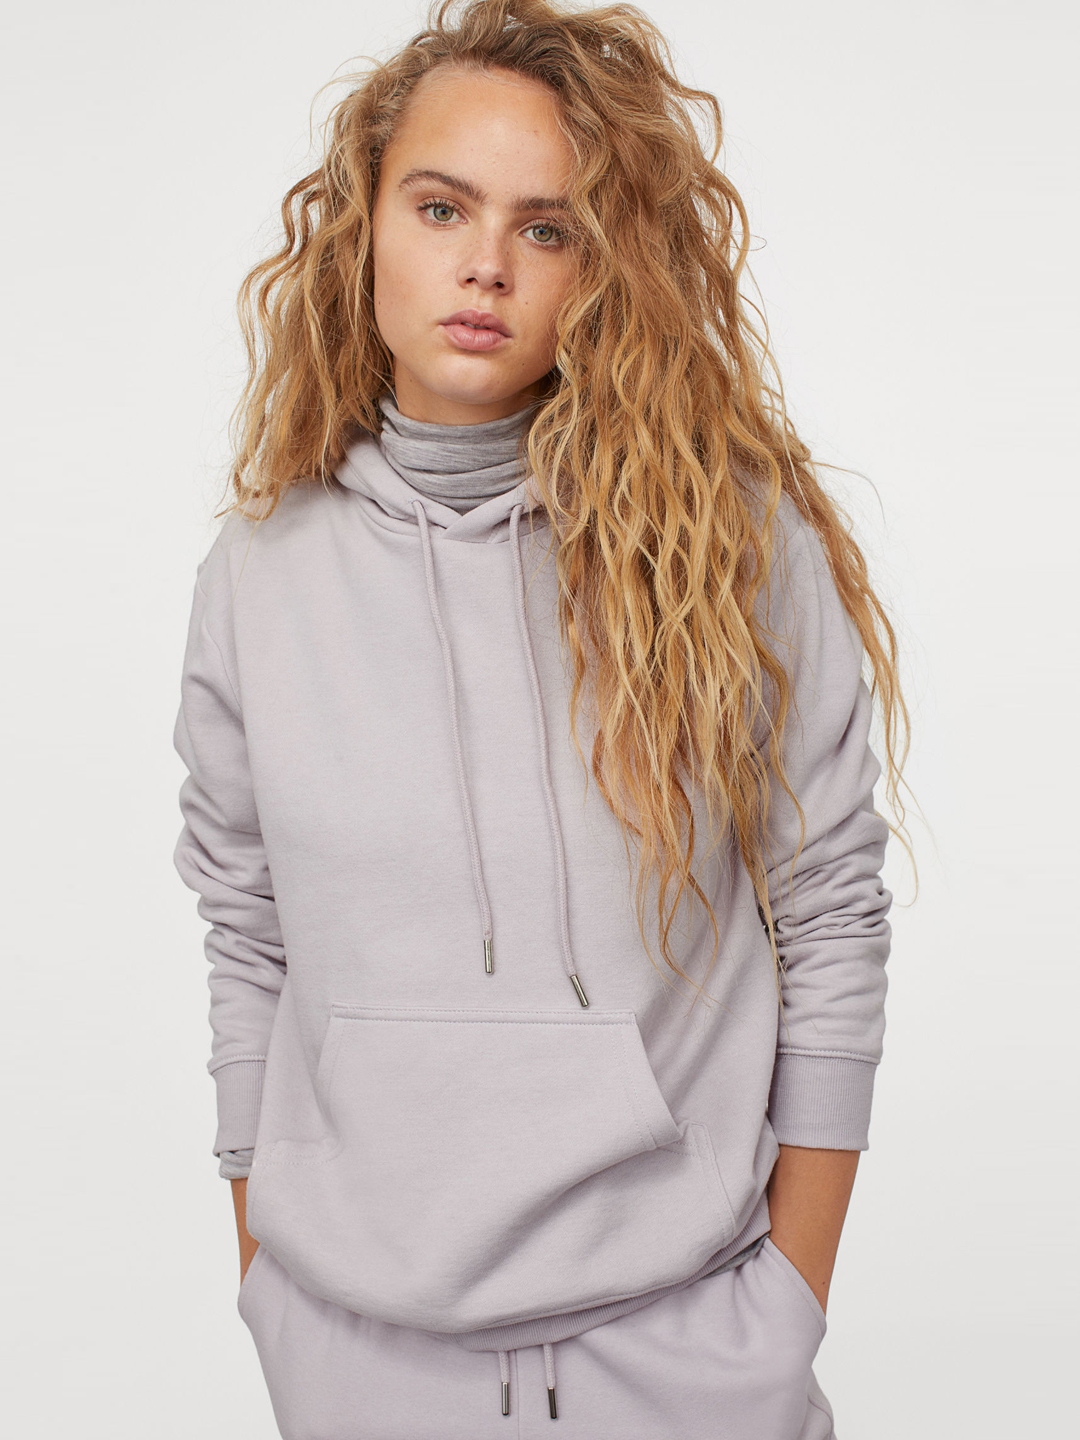 Buy H&M Women Purple Hooded Top - Sweatshirts for Women 13439830 | Myntra